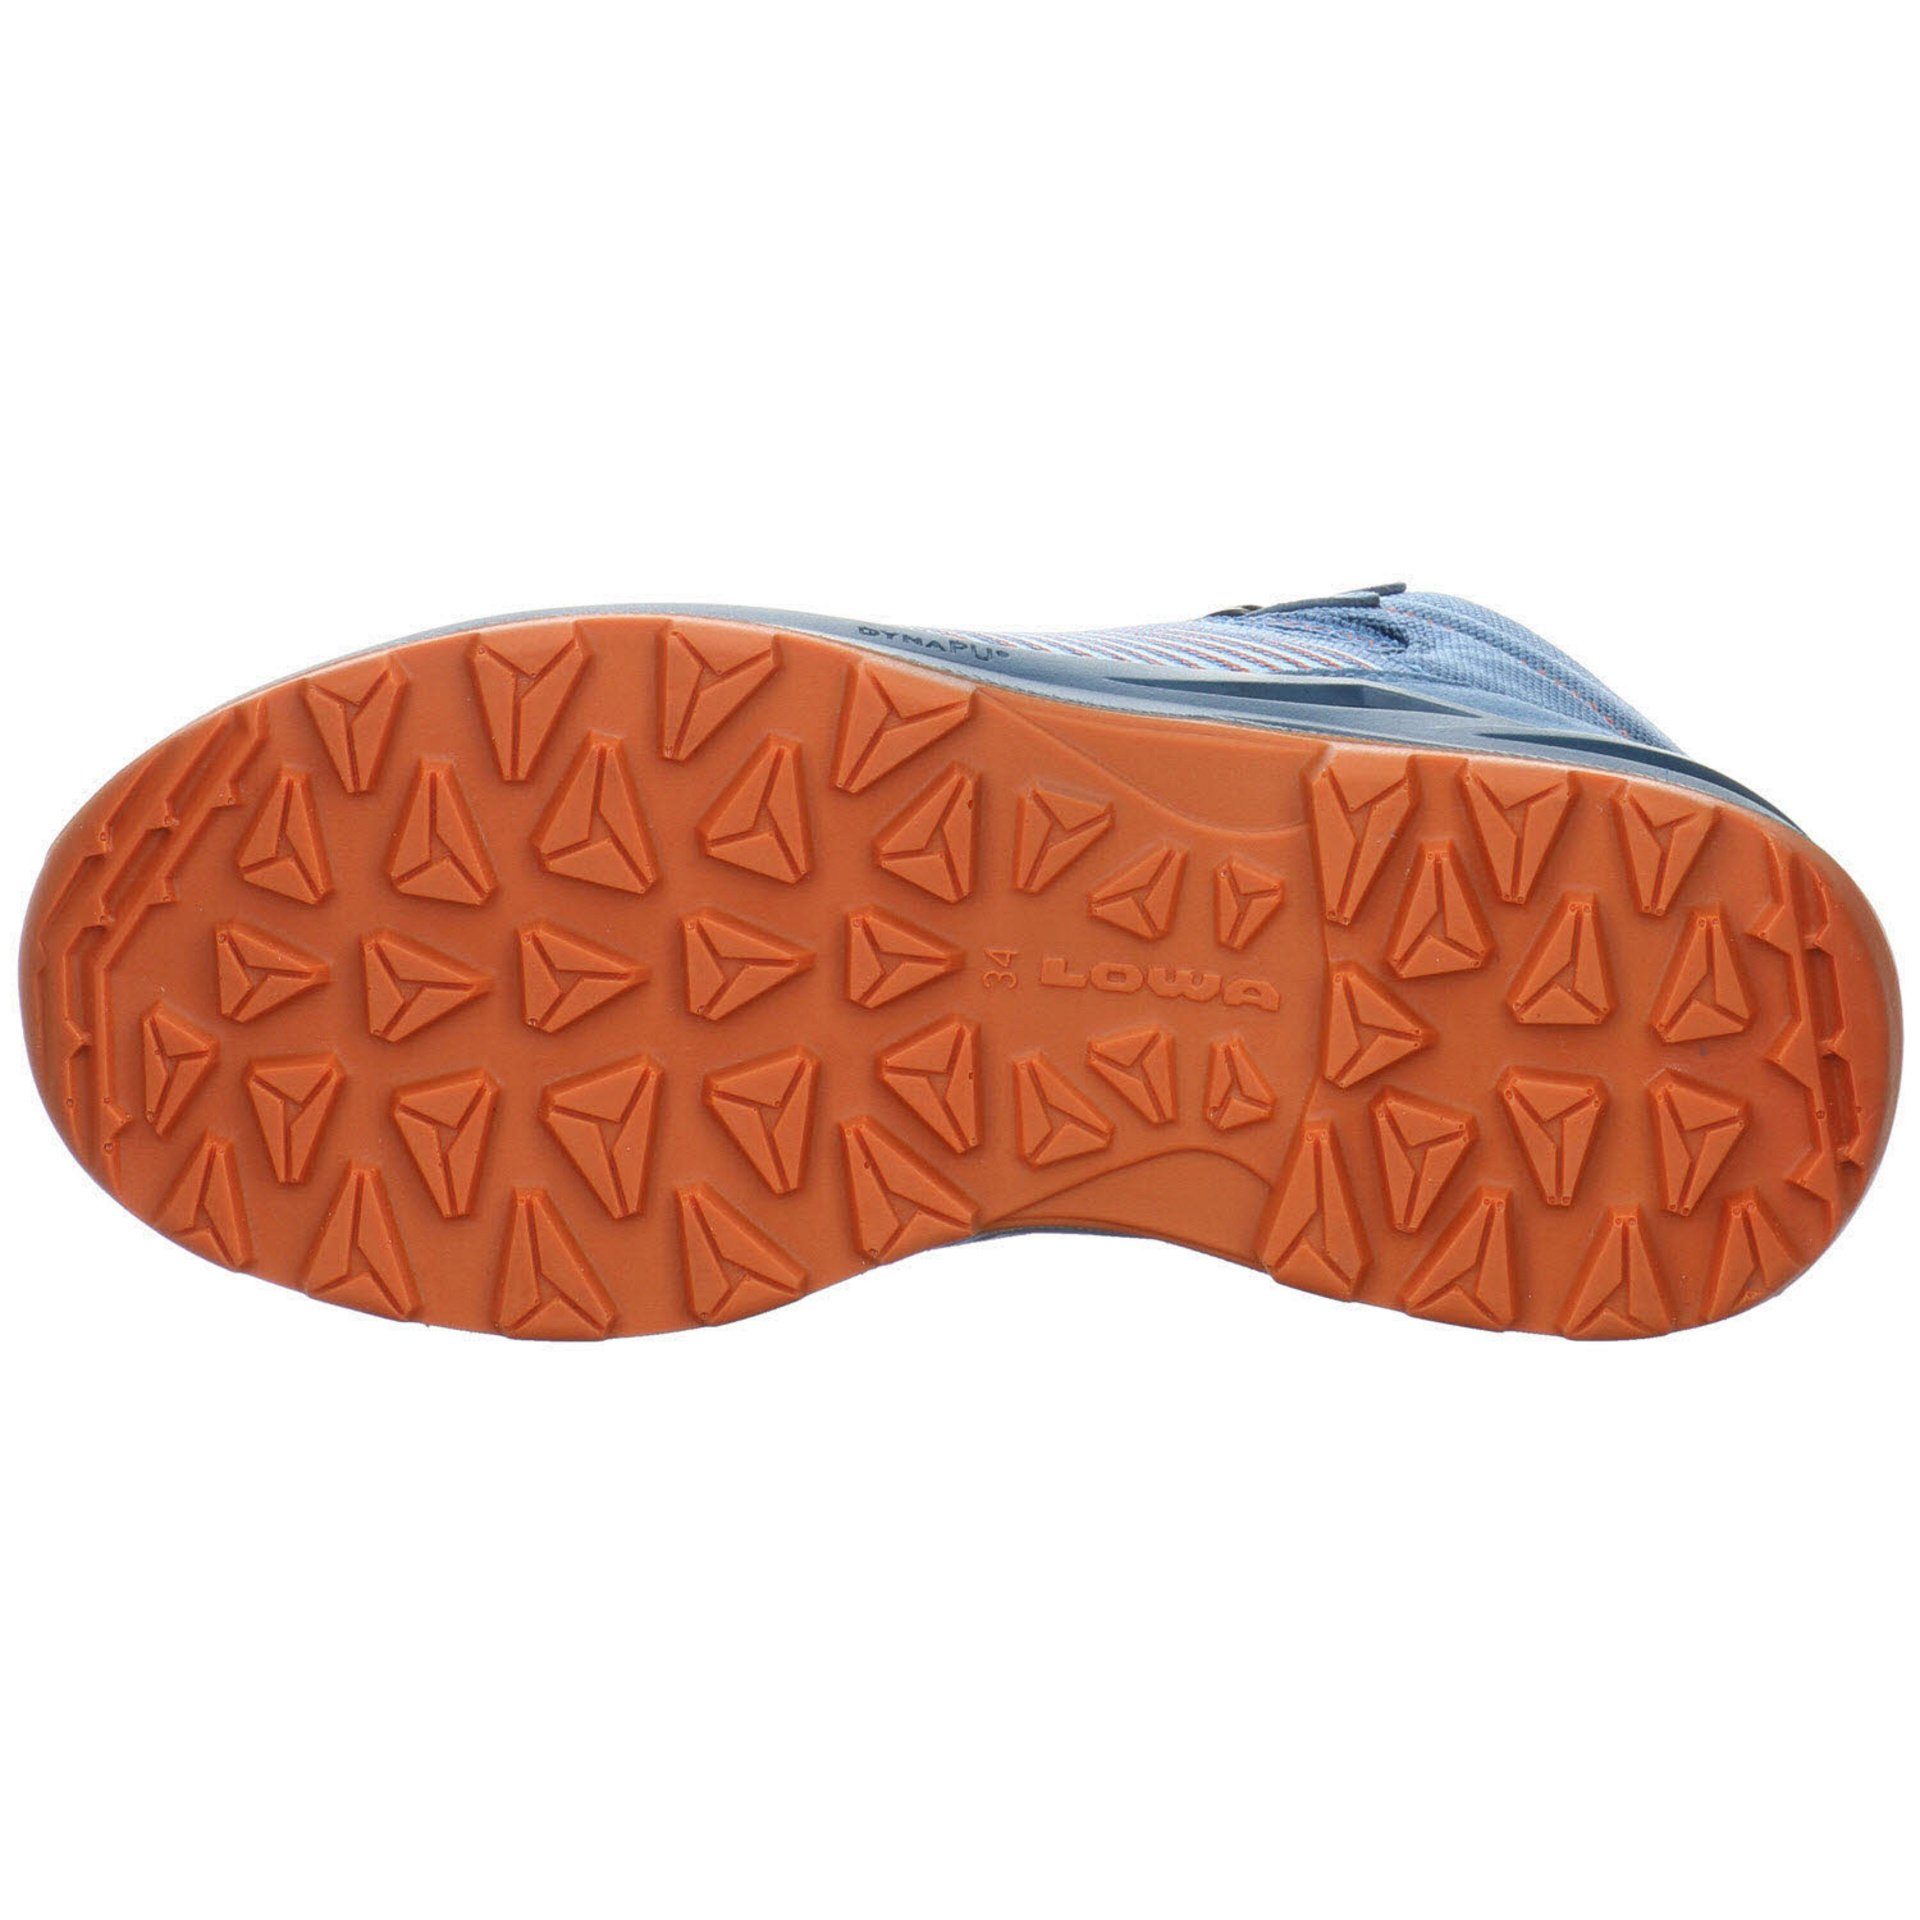 Jungen skyblue/orange Leder-/Textilkombination Outdoorschuh Schnürhalbschuhe Lowa